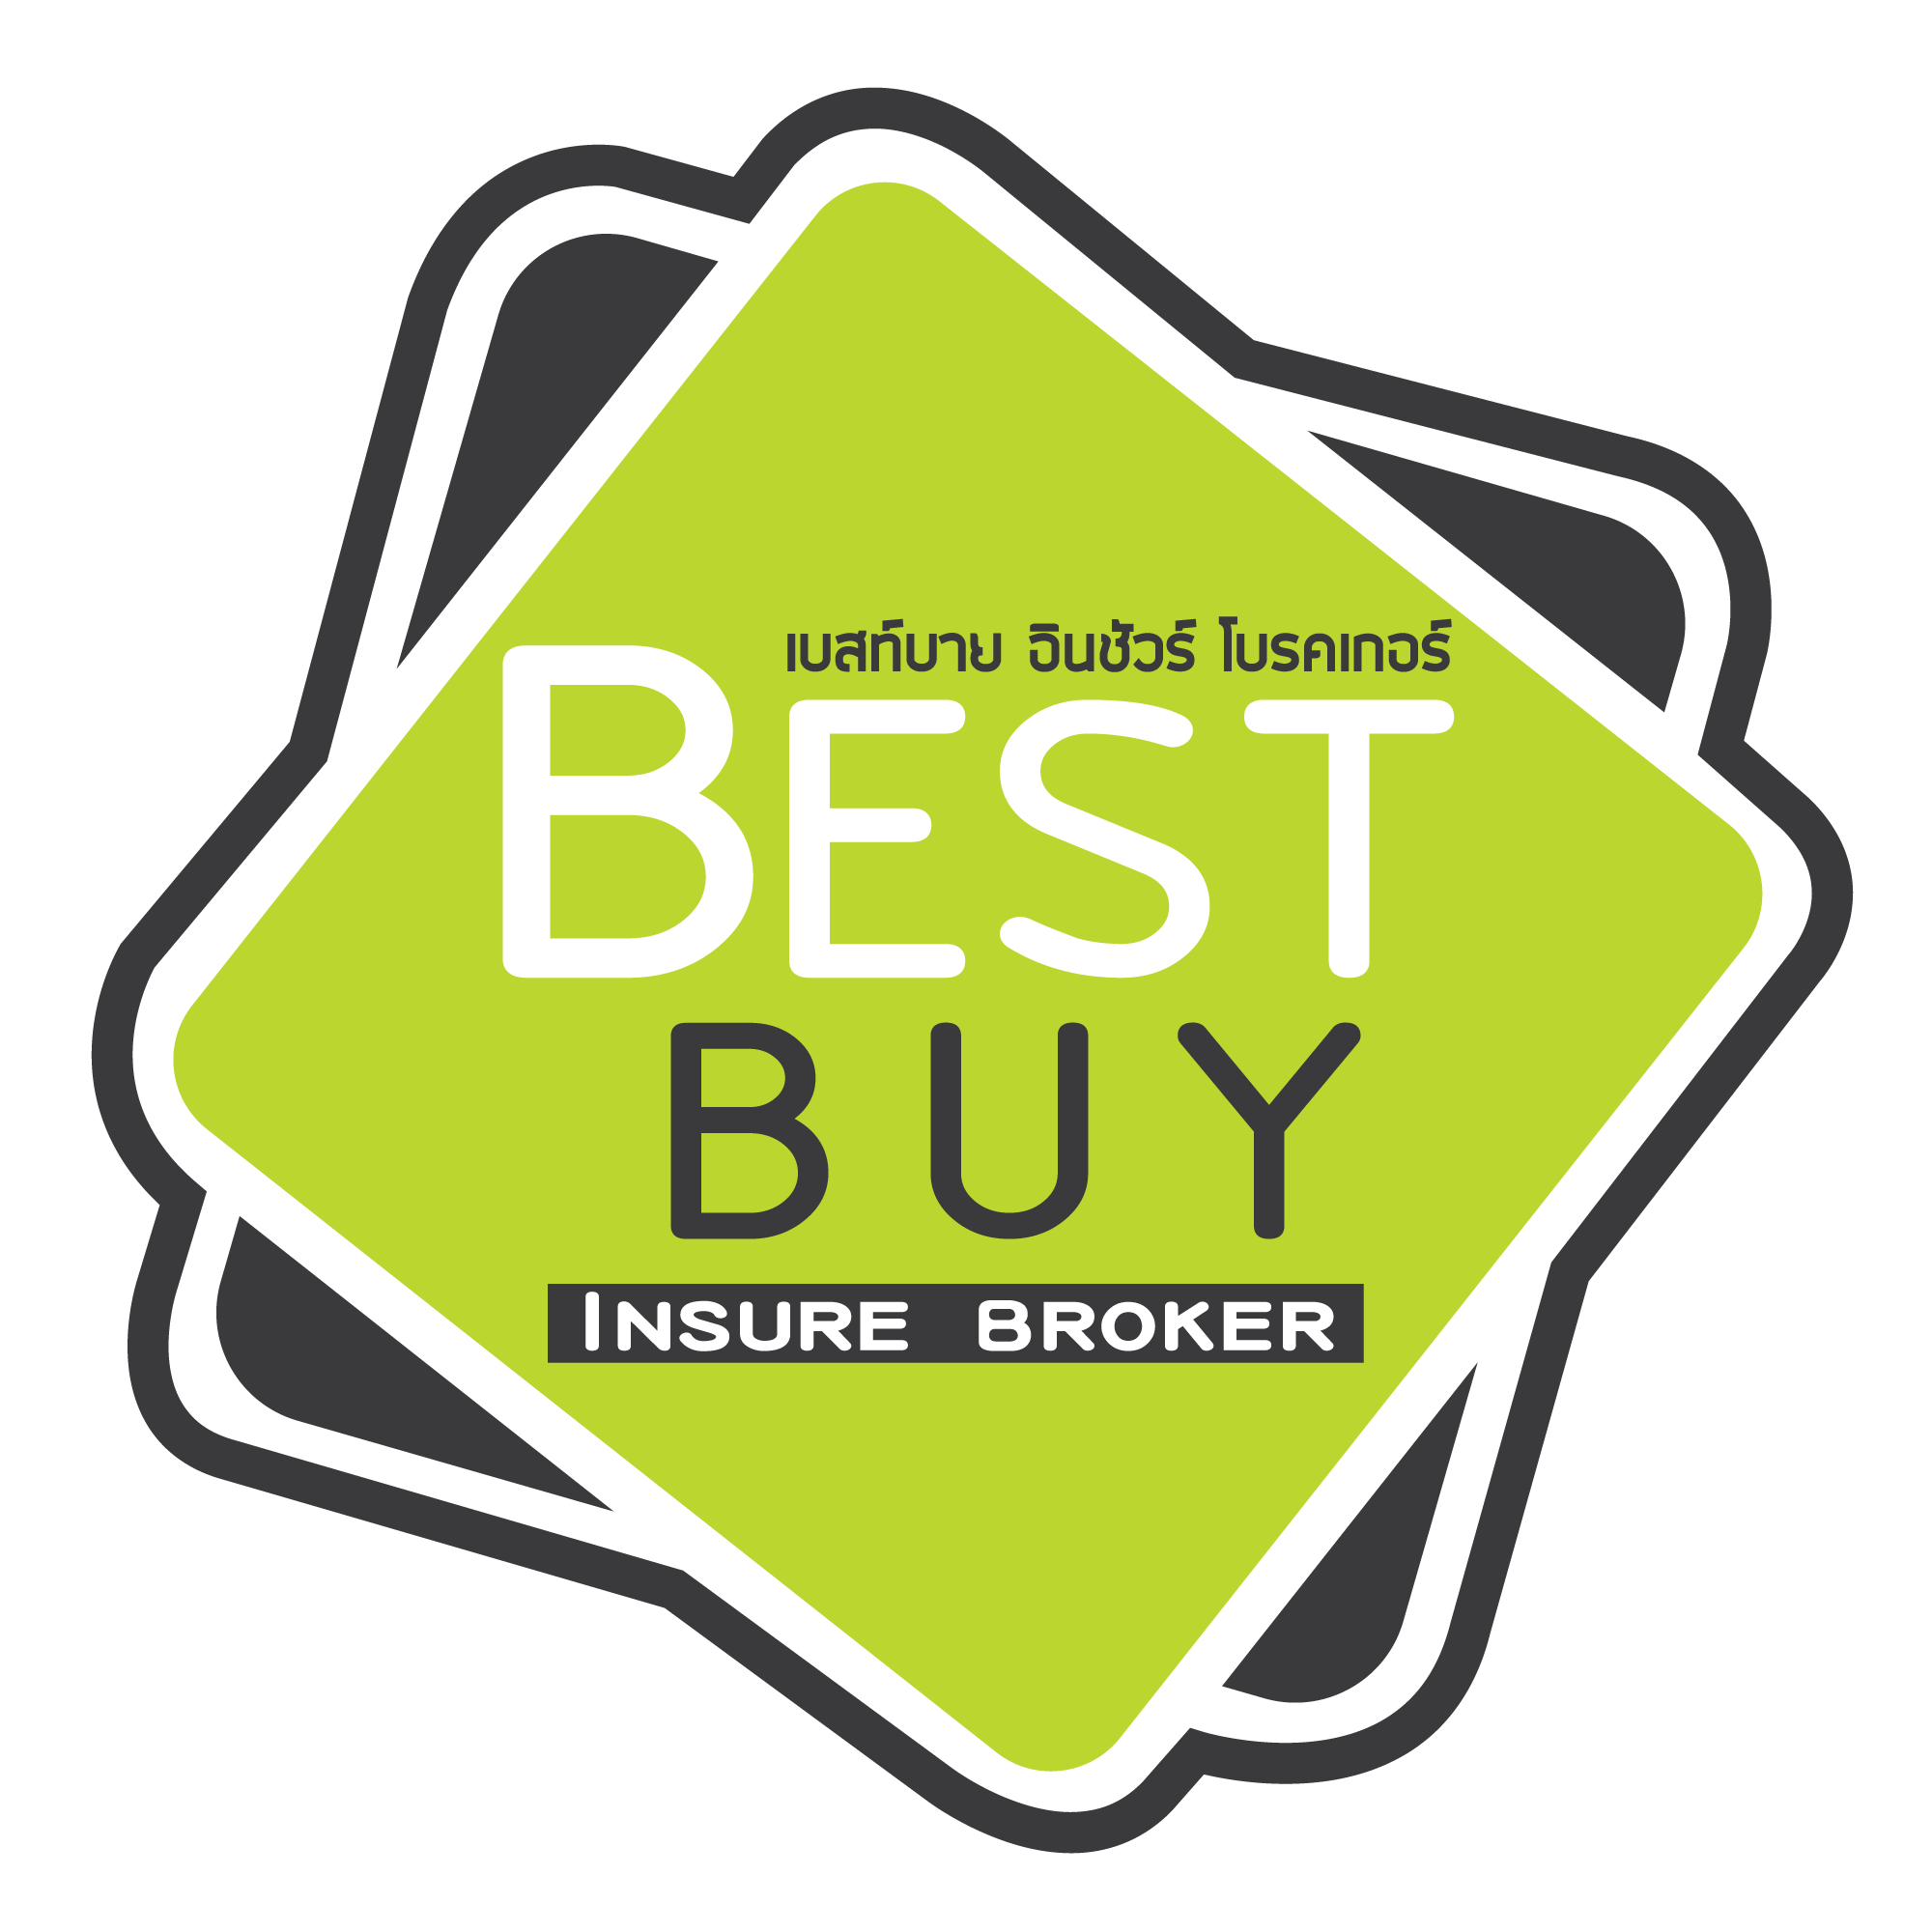 Best Buy Insure Broker